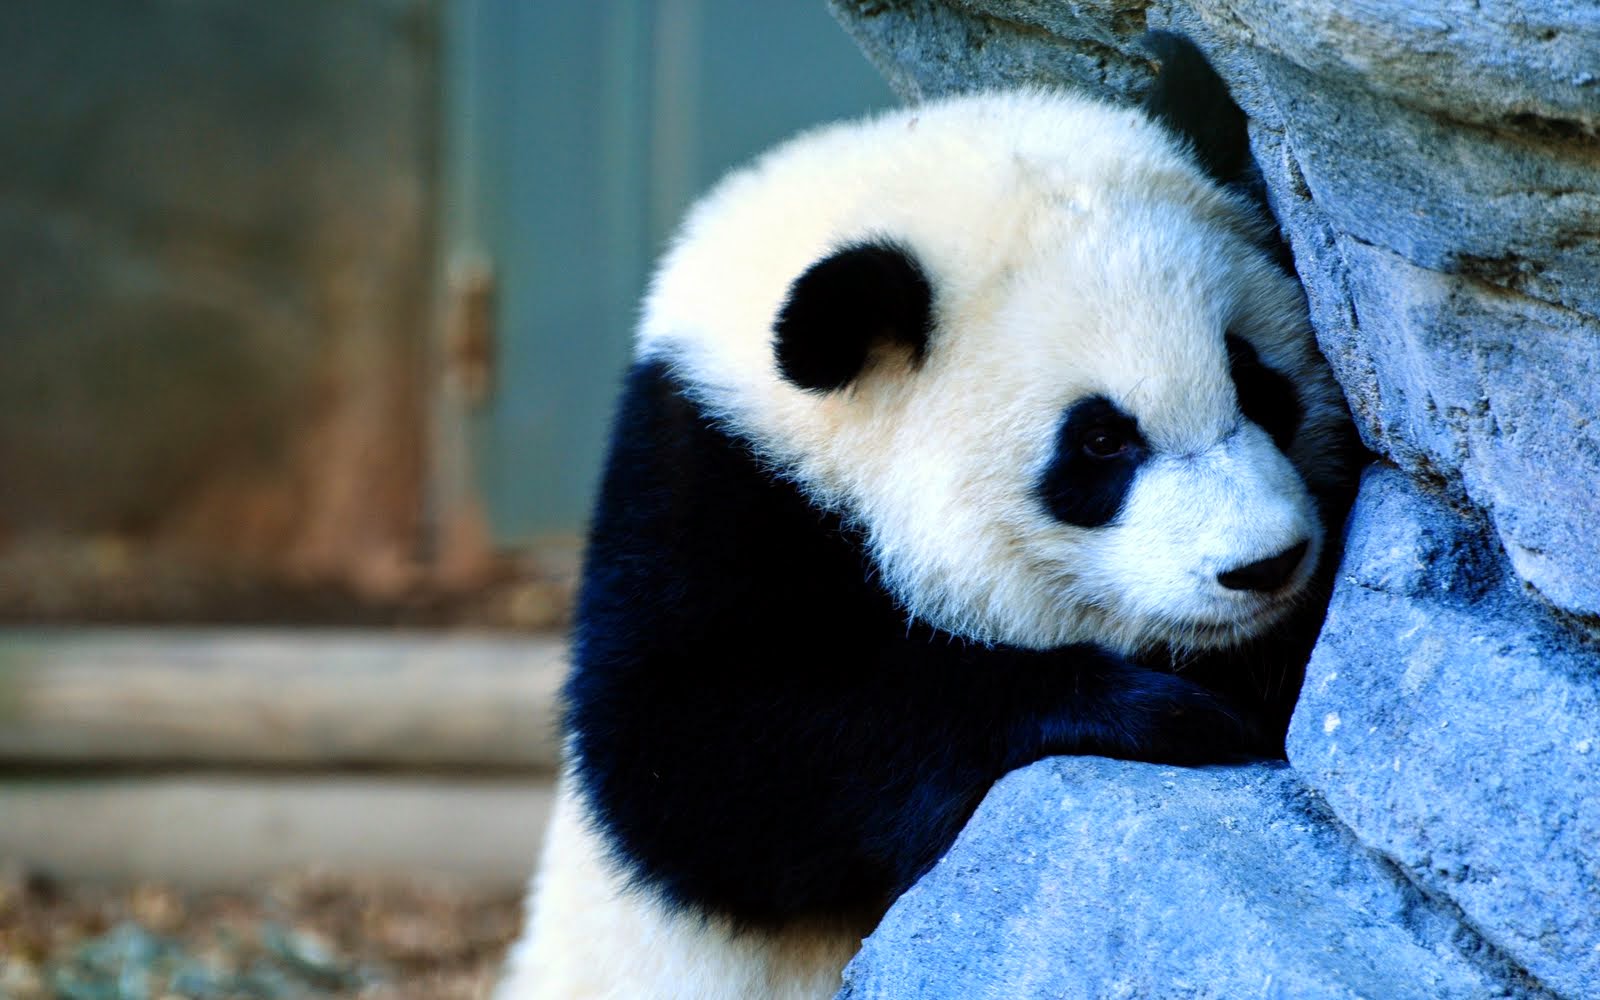  Gambar  Panda  Lucu Serta Asal Usul Panda  Ayeey com